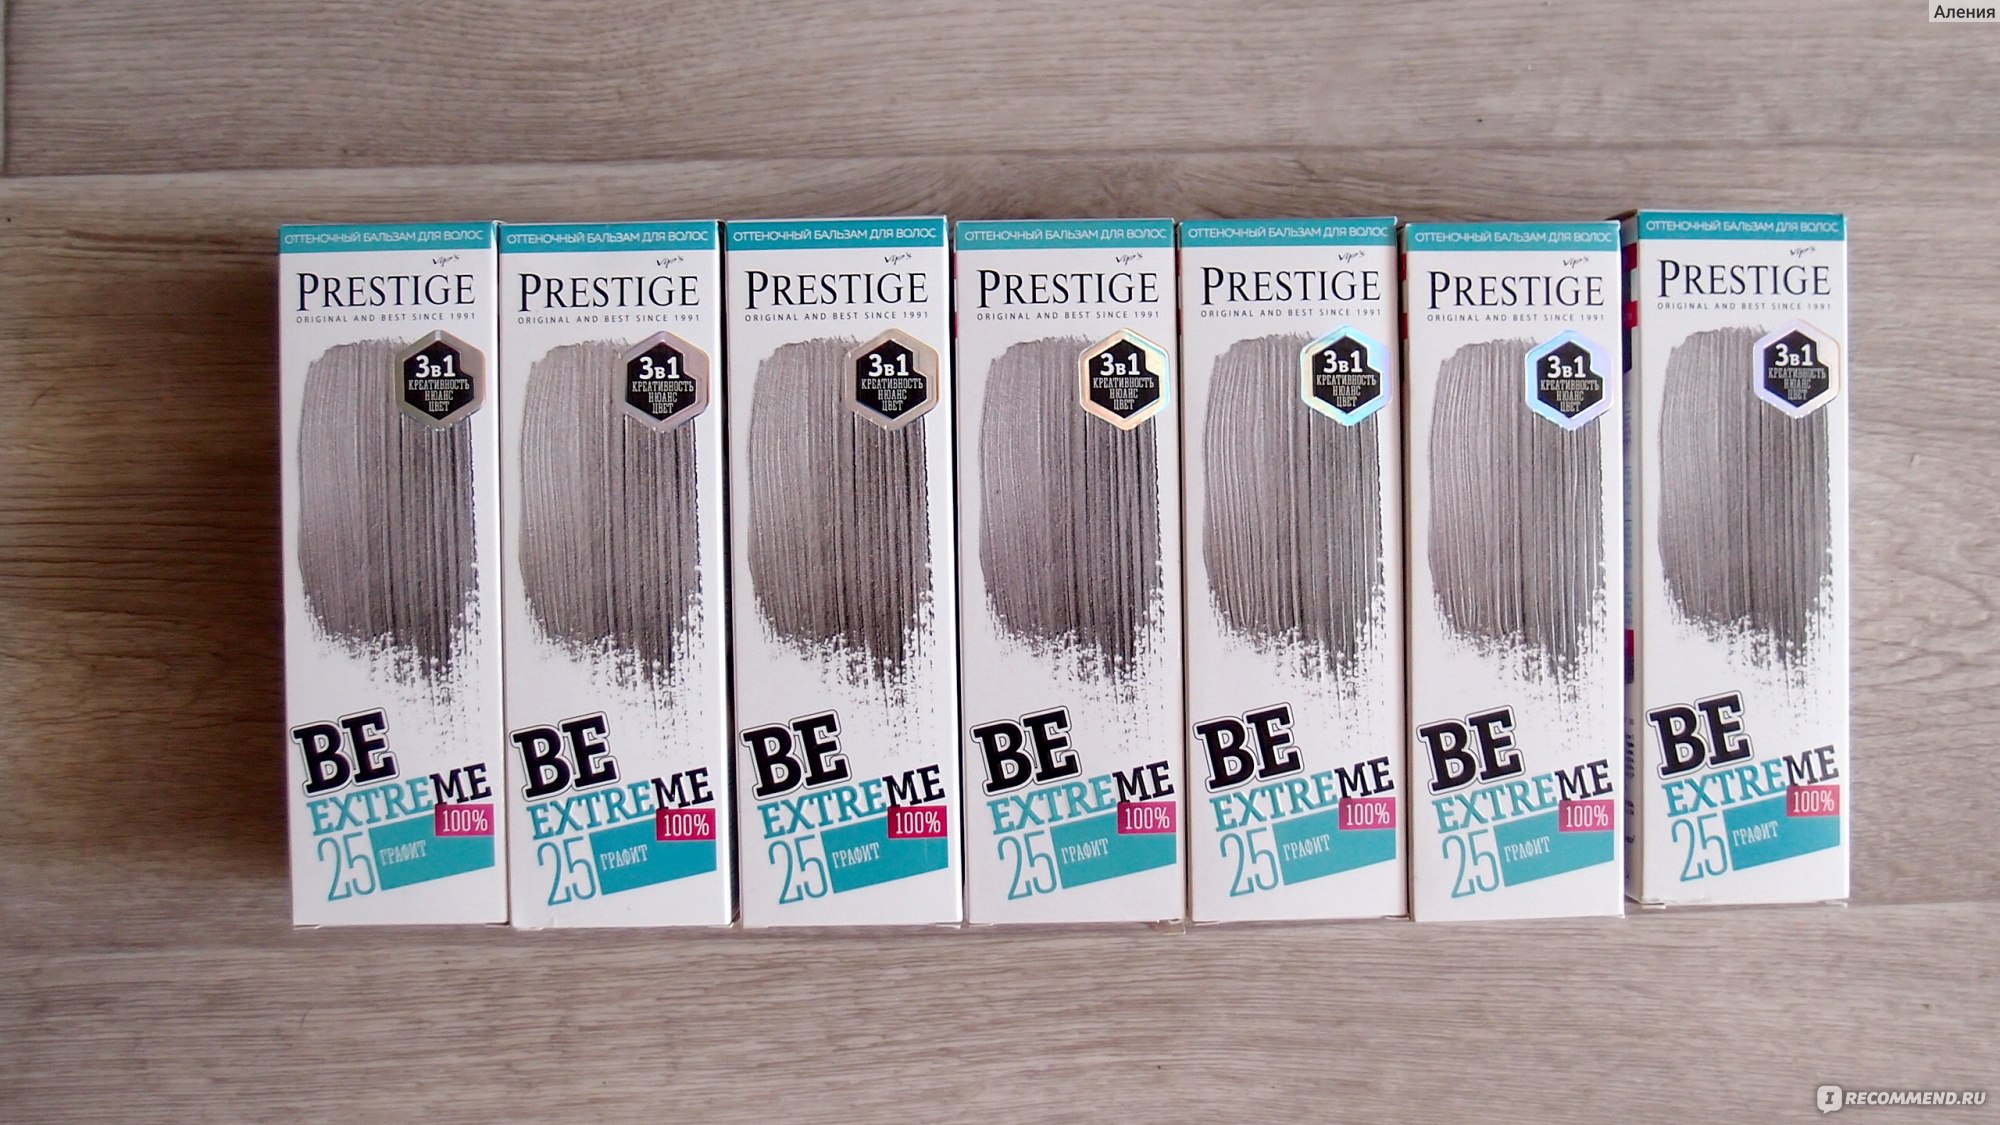 Оттеночный бальзам для волос Vip's Prestige Be Extreme "Графит" отзывы